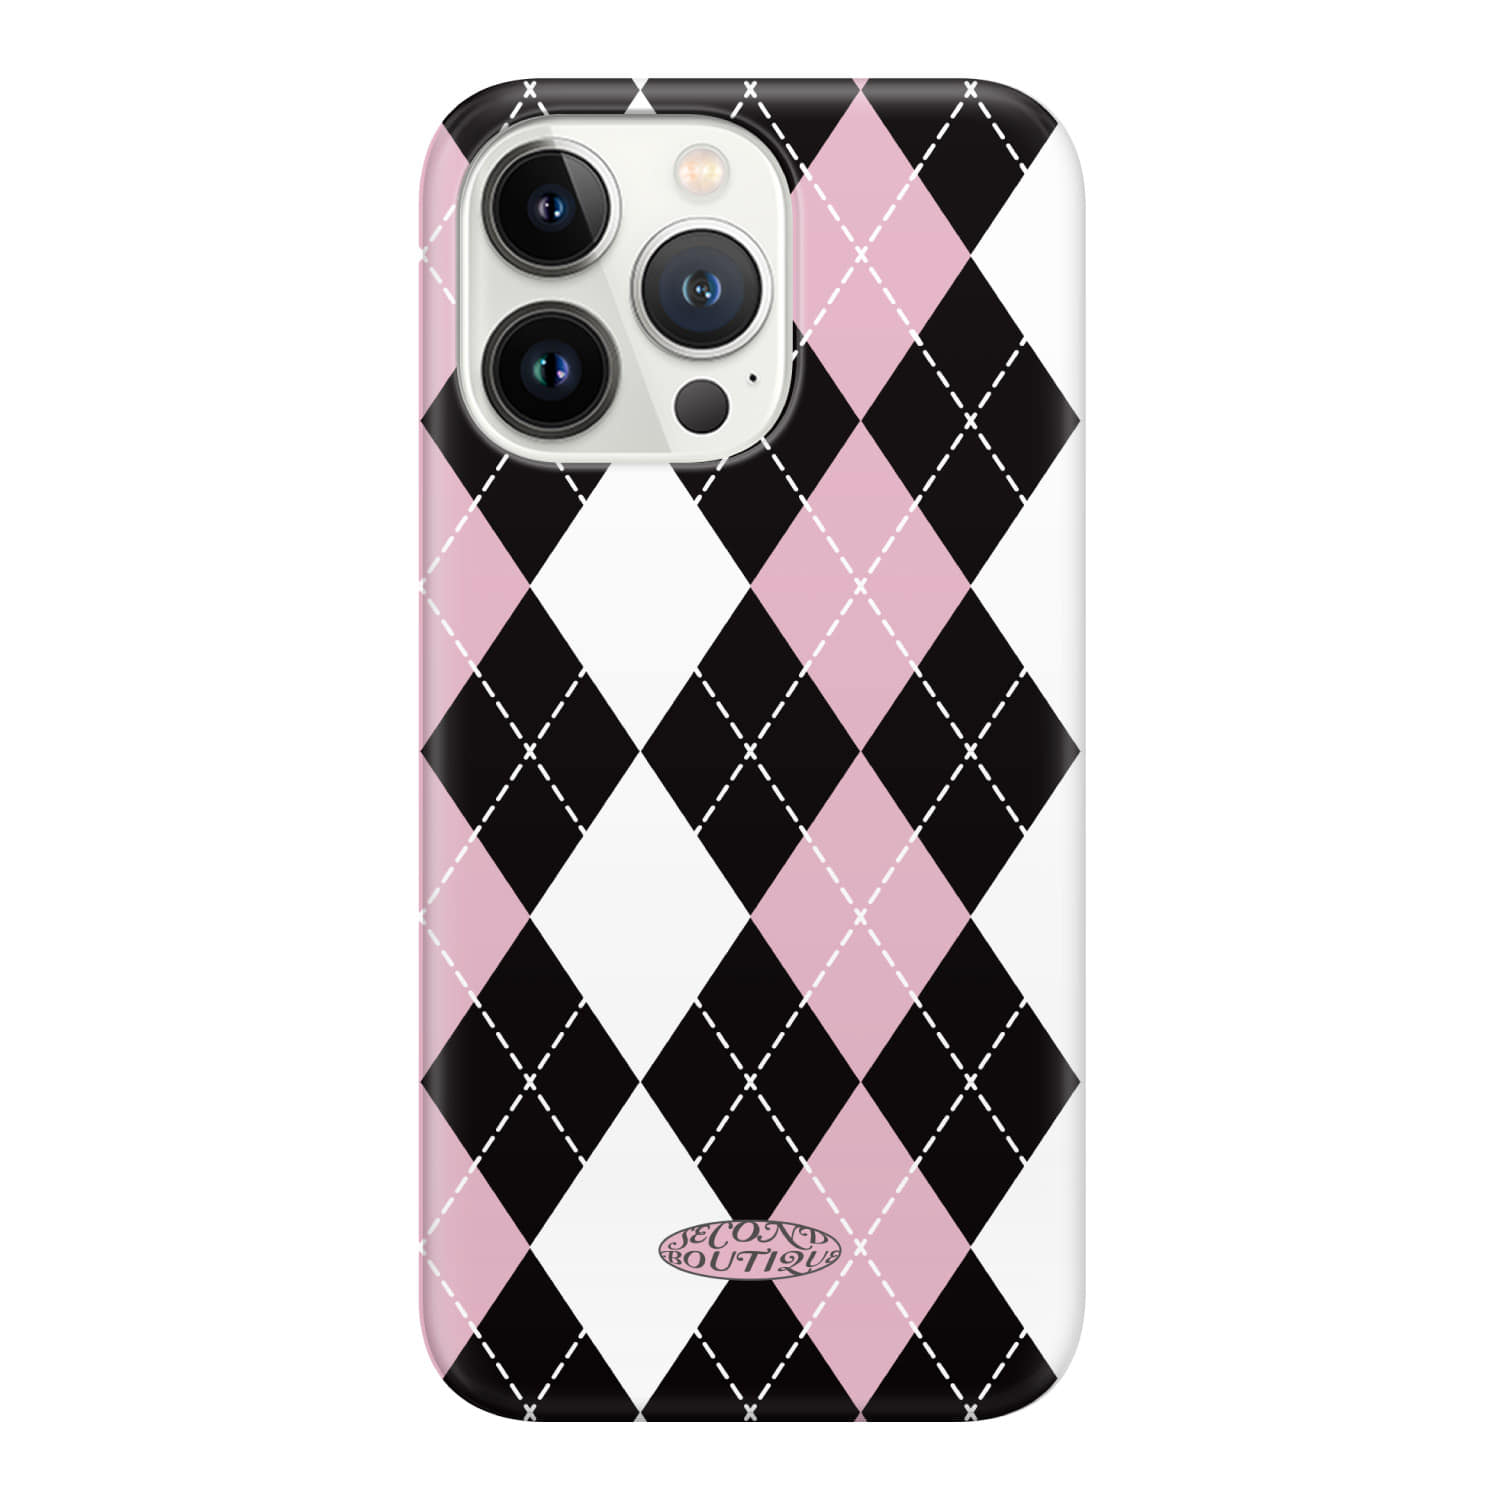 [hardcase] Black pink Argyle pattern hardcase